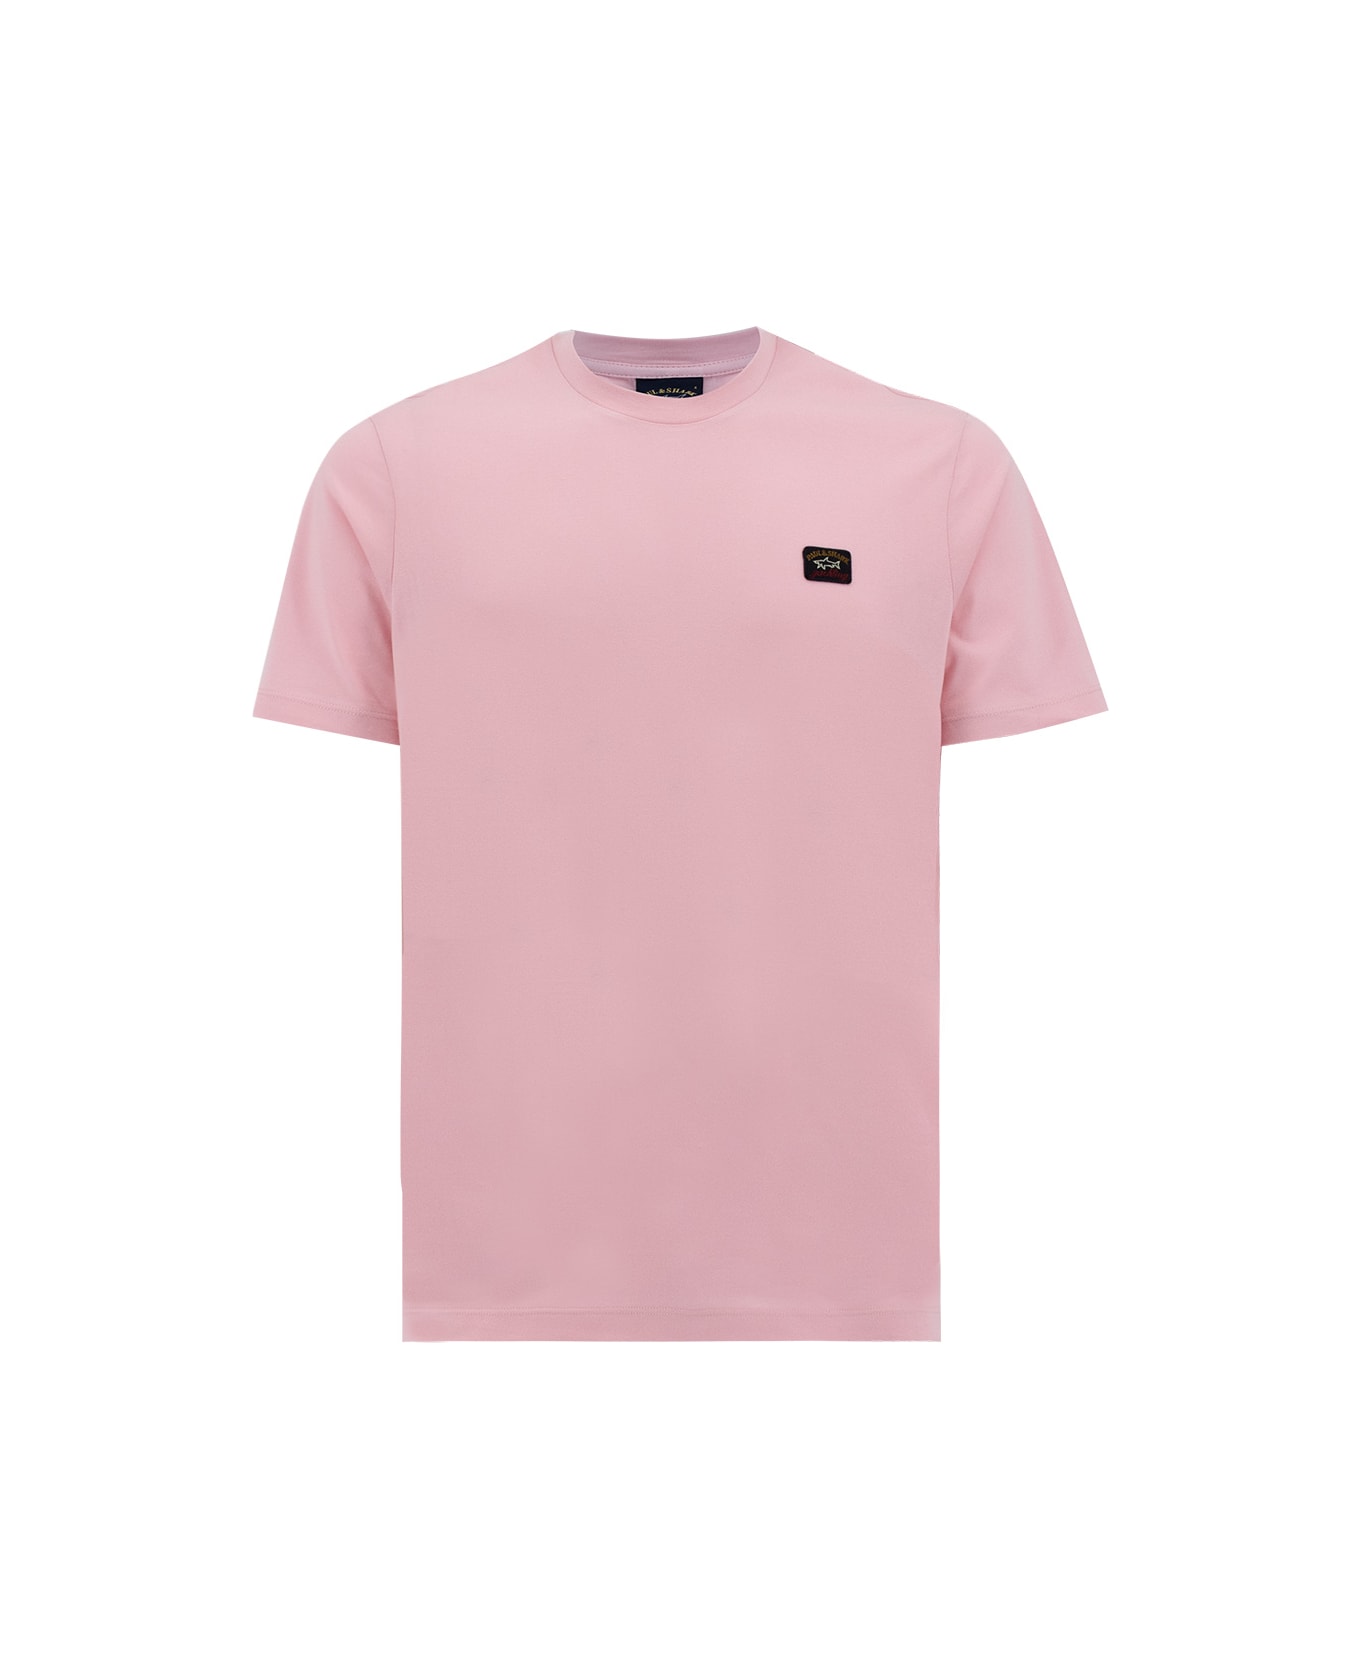 Paul&Shark T-shirt - LIGHT ROSE